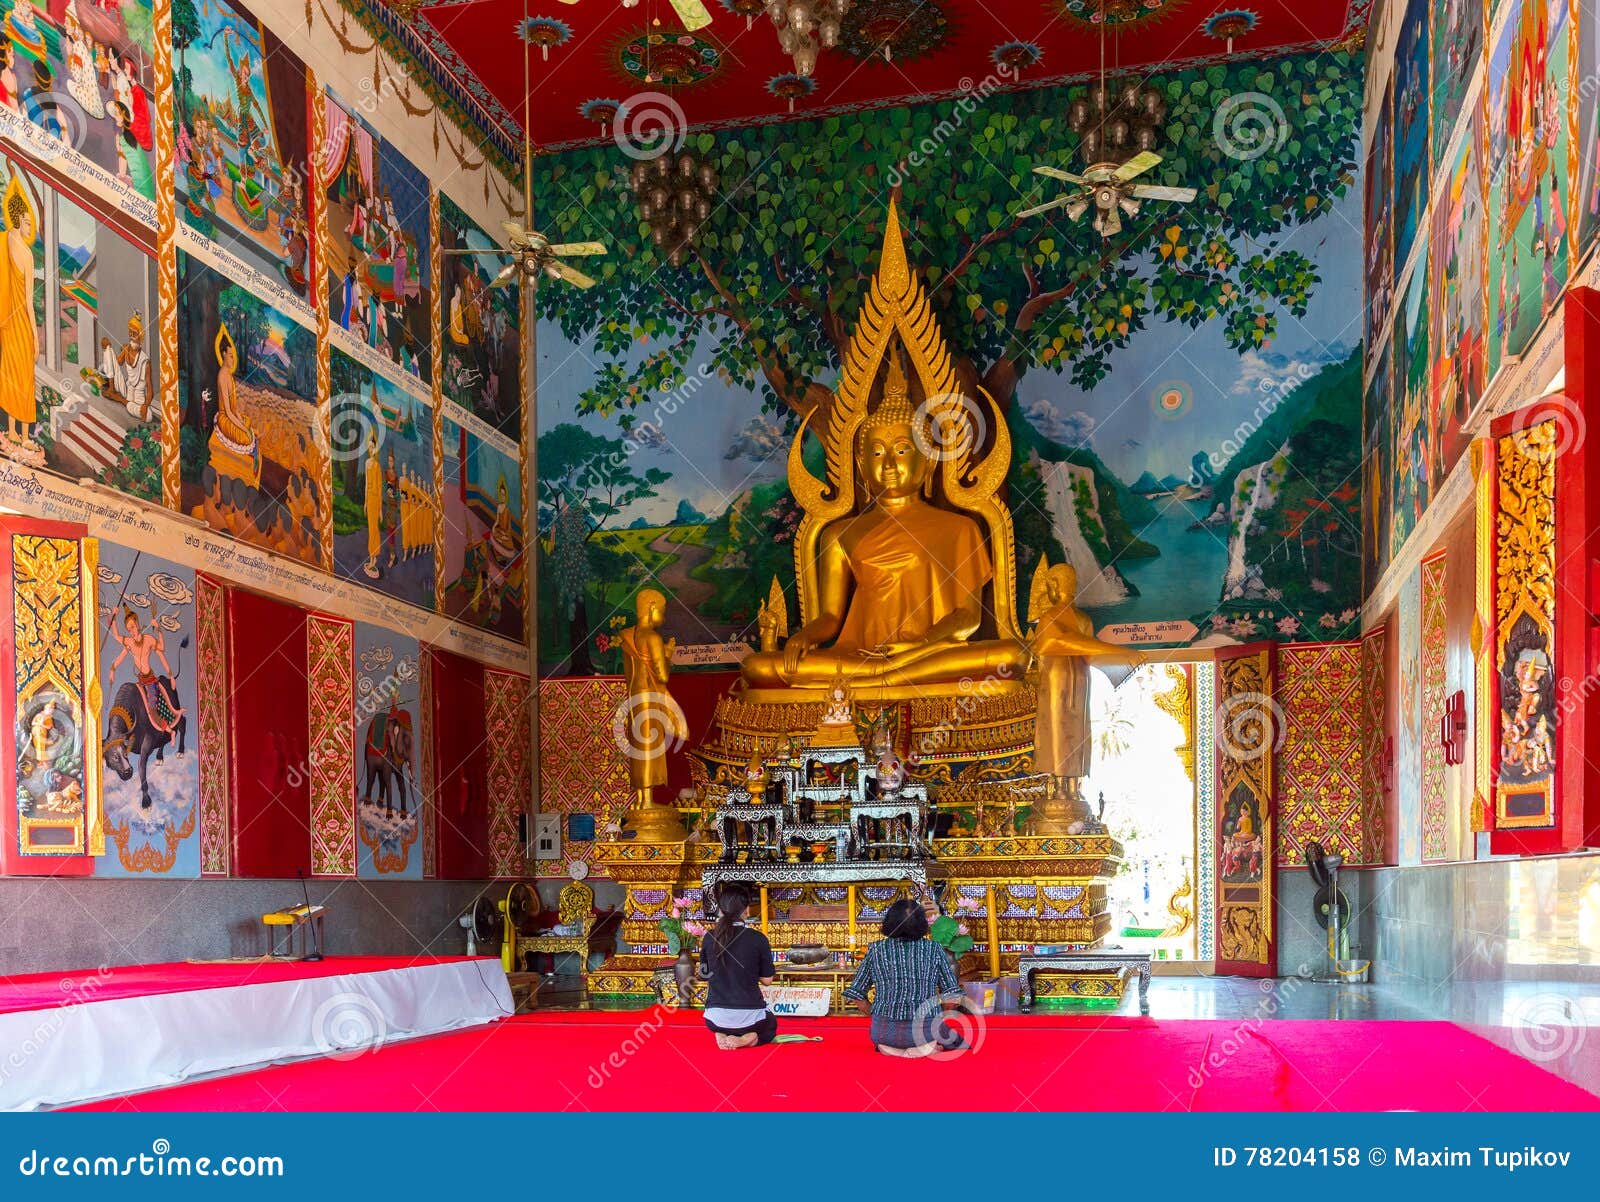 Внутреннее убранство православного и буддийского храма. Буддистский храм в Тайланде внутри. Алтарь в буддийском храме. Внутри буддийского храма алтарь Святой. Буддийский монастырь внутреннее убранство.